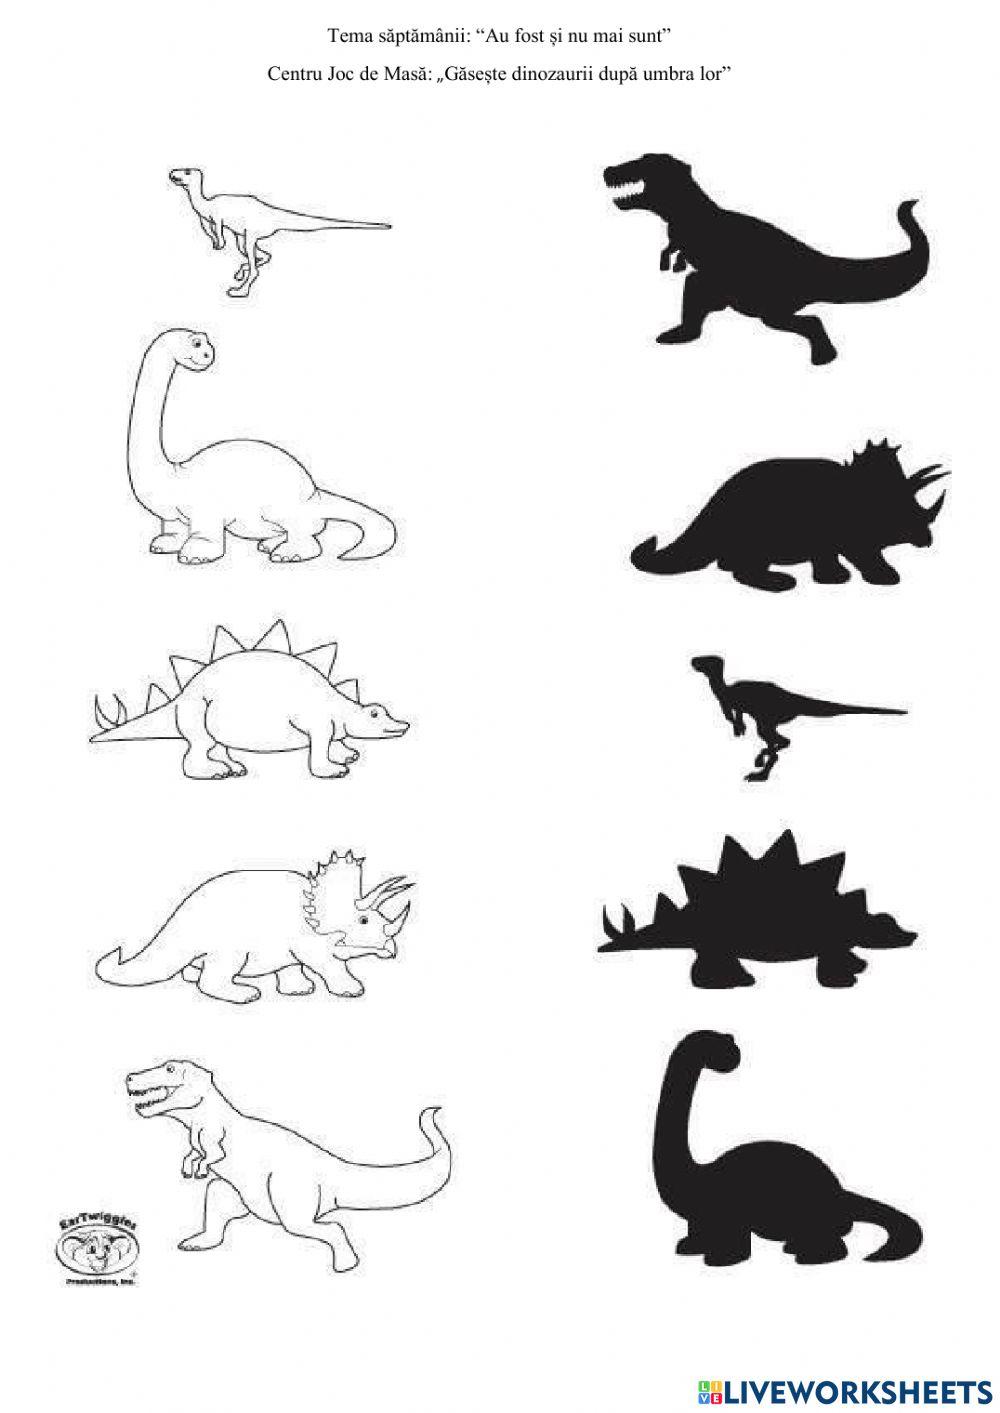 Dinozaurii si umbrele lor